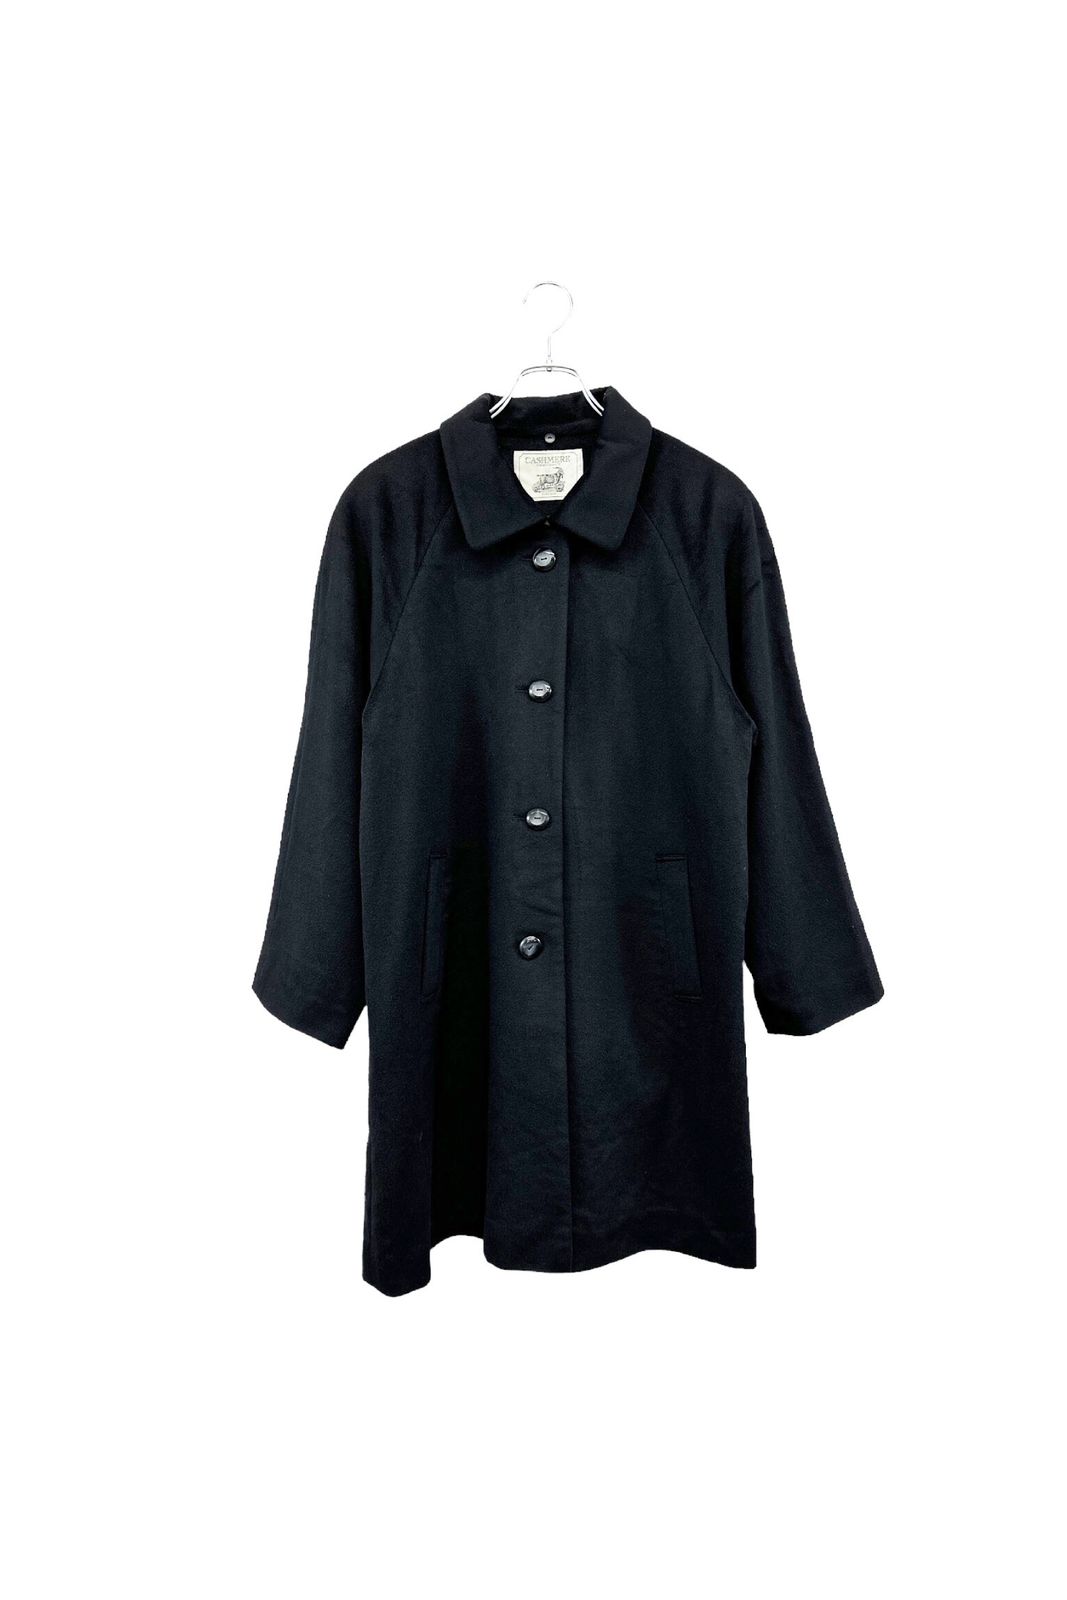 90's PURE CASHMERE coat ピュアカシミヤ コート ブラック カシミヤ100% レディース ヴィンテージ 単品 8